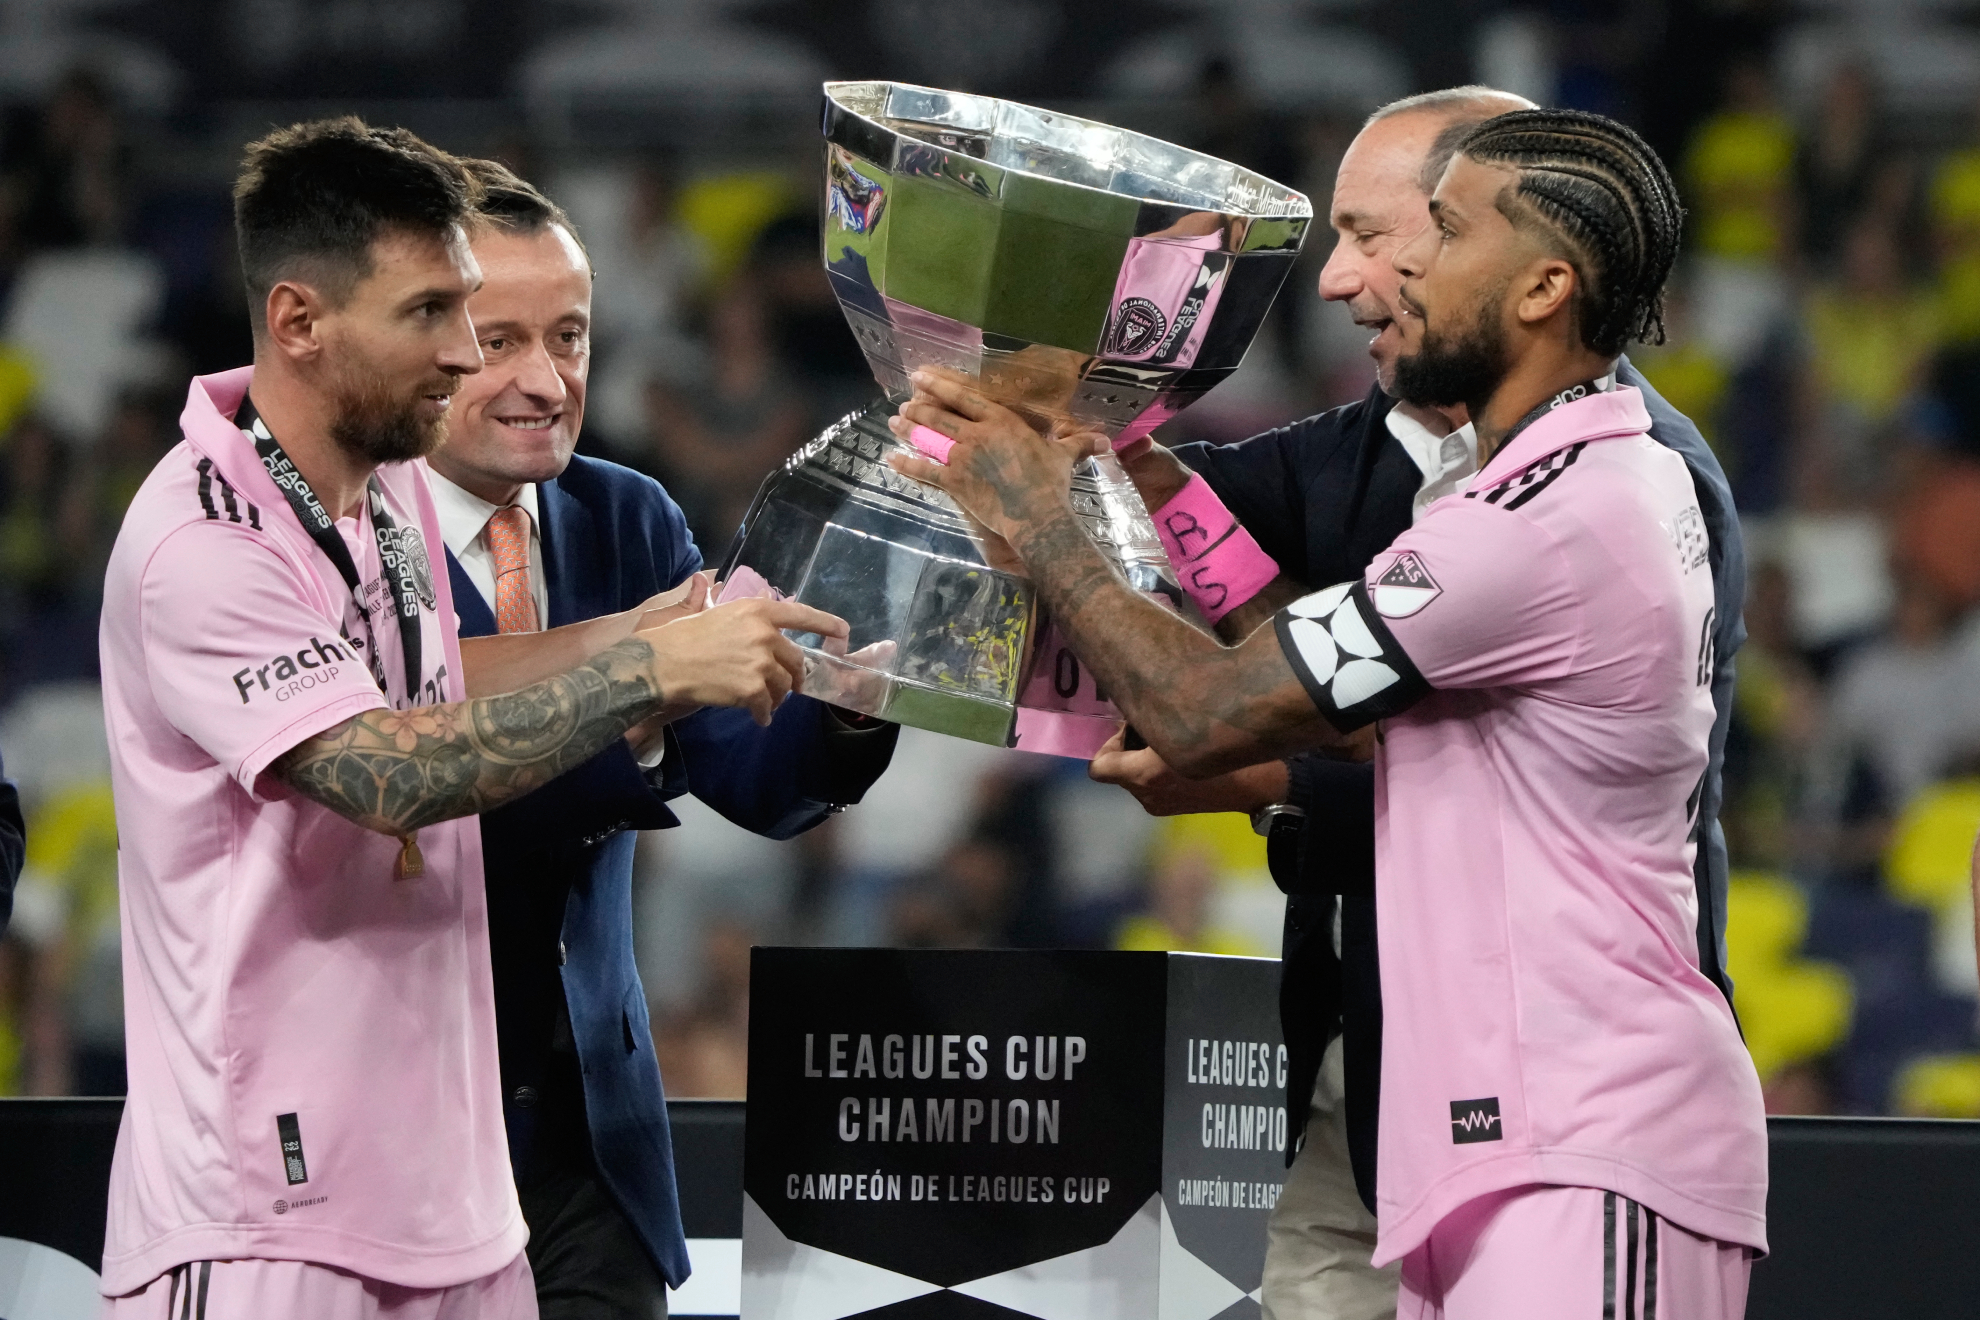 Por esto lleva el brazalete: Messi comparte la Leagues Cup con el anterior capitán